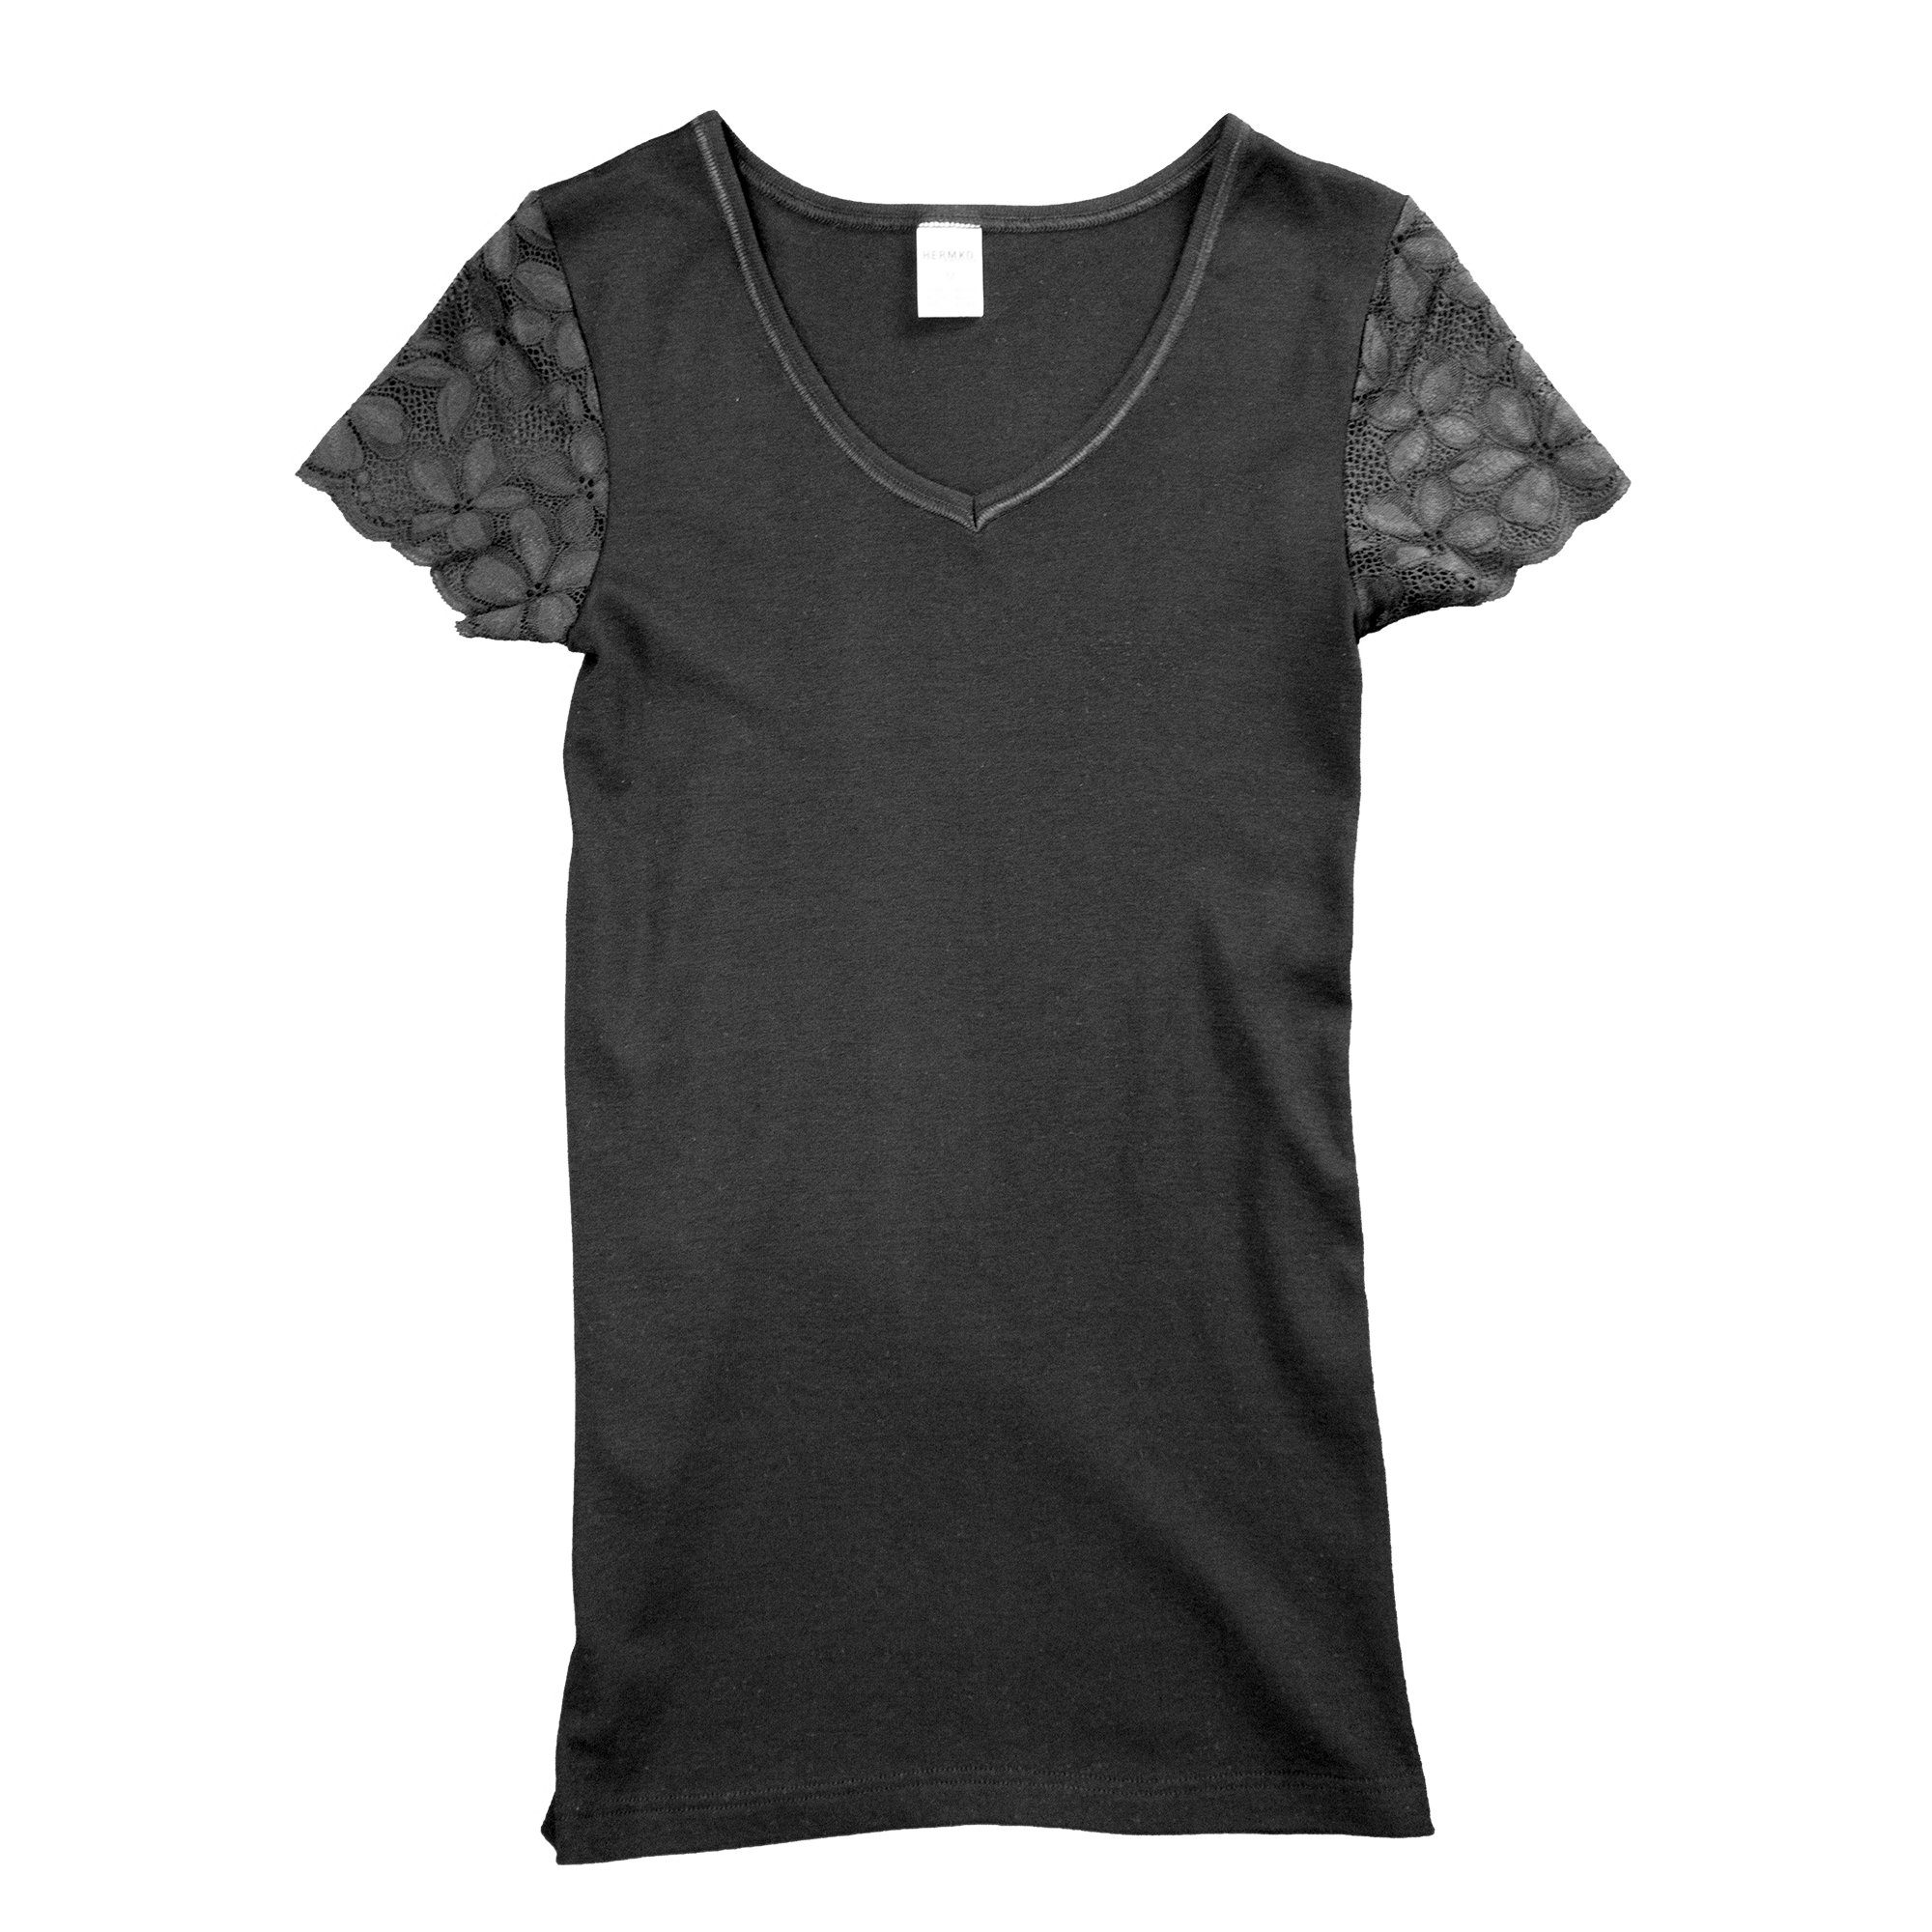 HERMKO + schwarz Damen 1788030 V-Ausschnitt Shirt Spitzen-Ärmeln Unterziehshirt kurzen